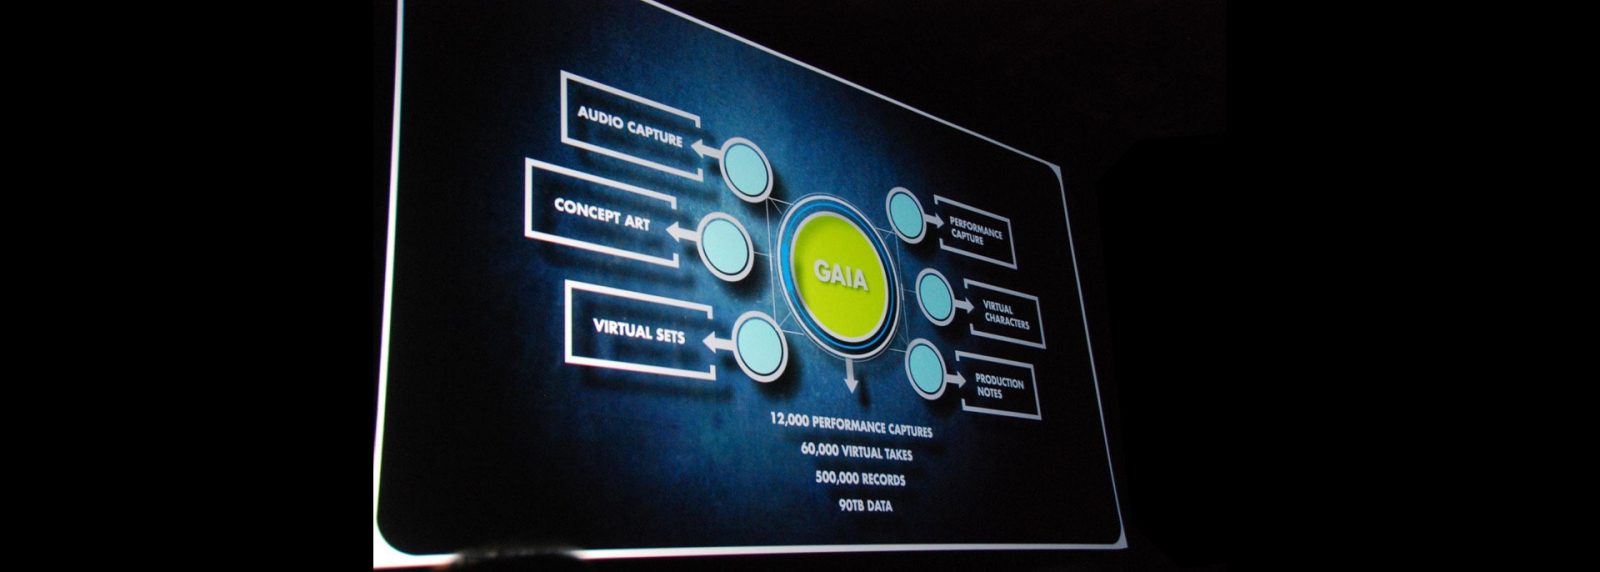 Интерфейс облачной системы управления контентом Gaia